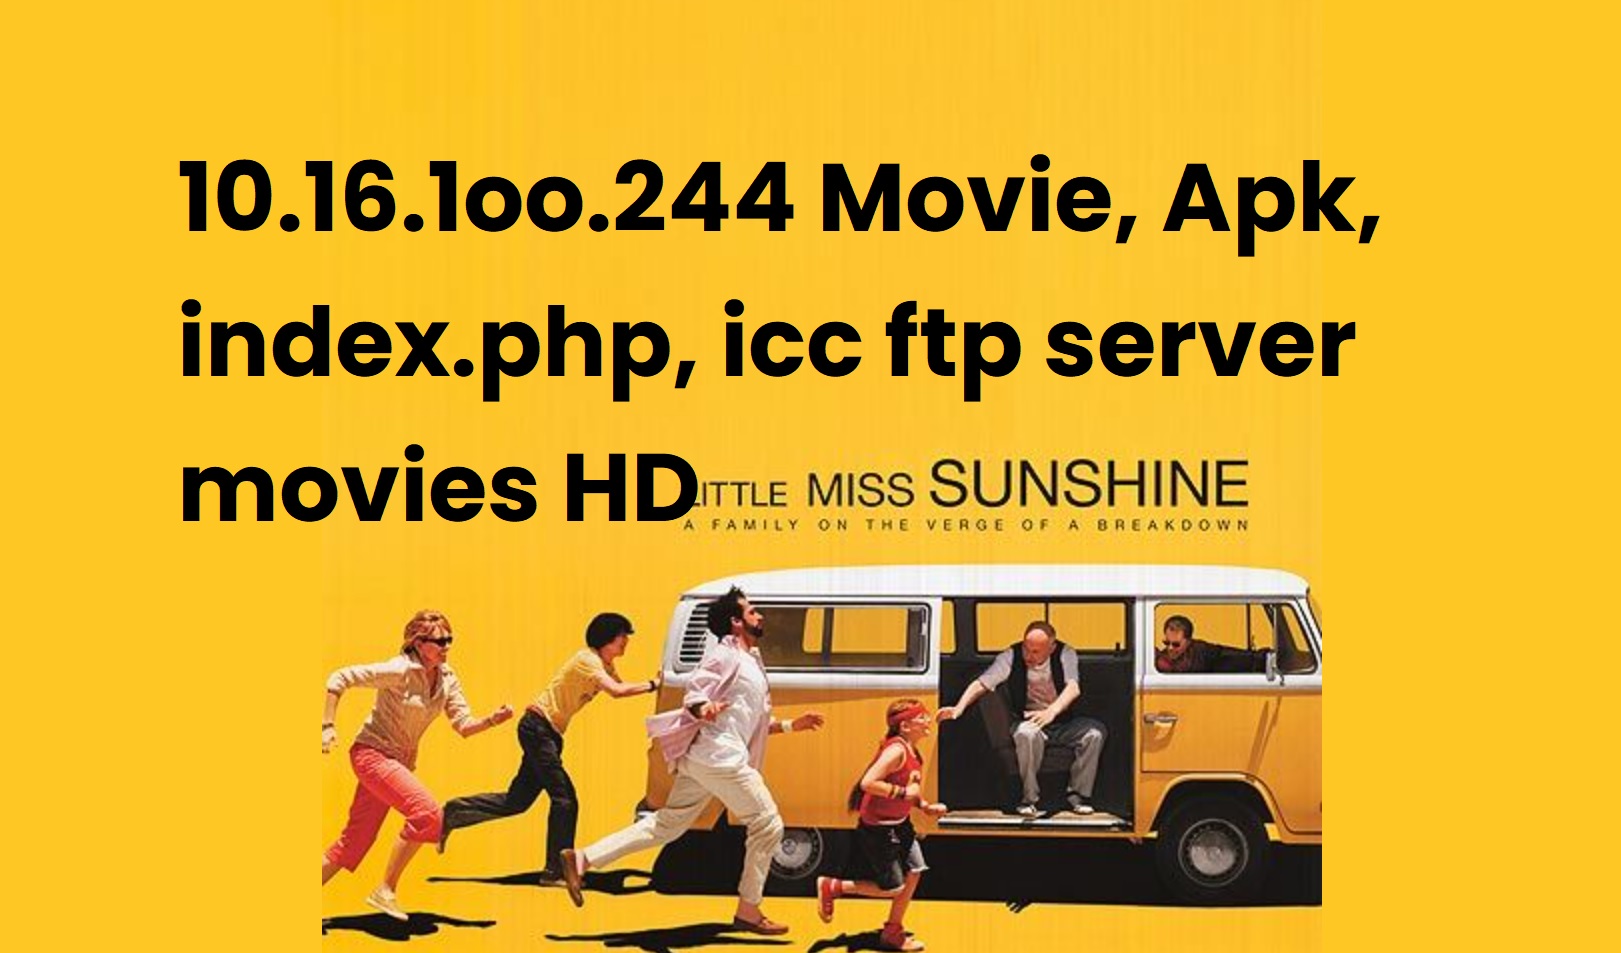 10.16.1oo.244 Movie, Apk, index.php, icc ftp server movie HD